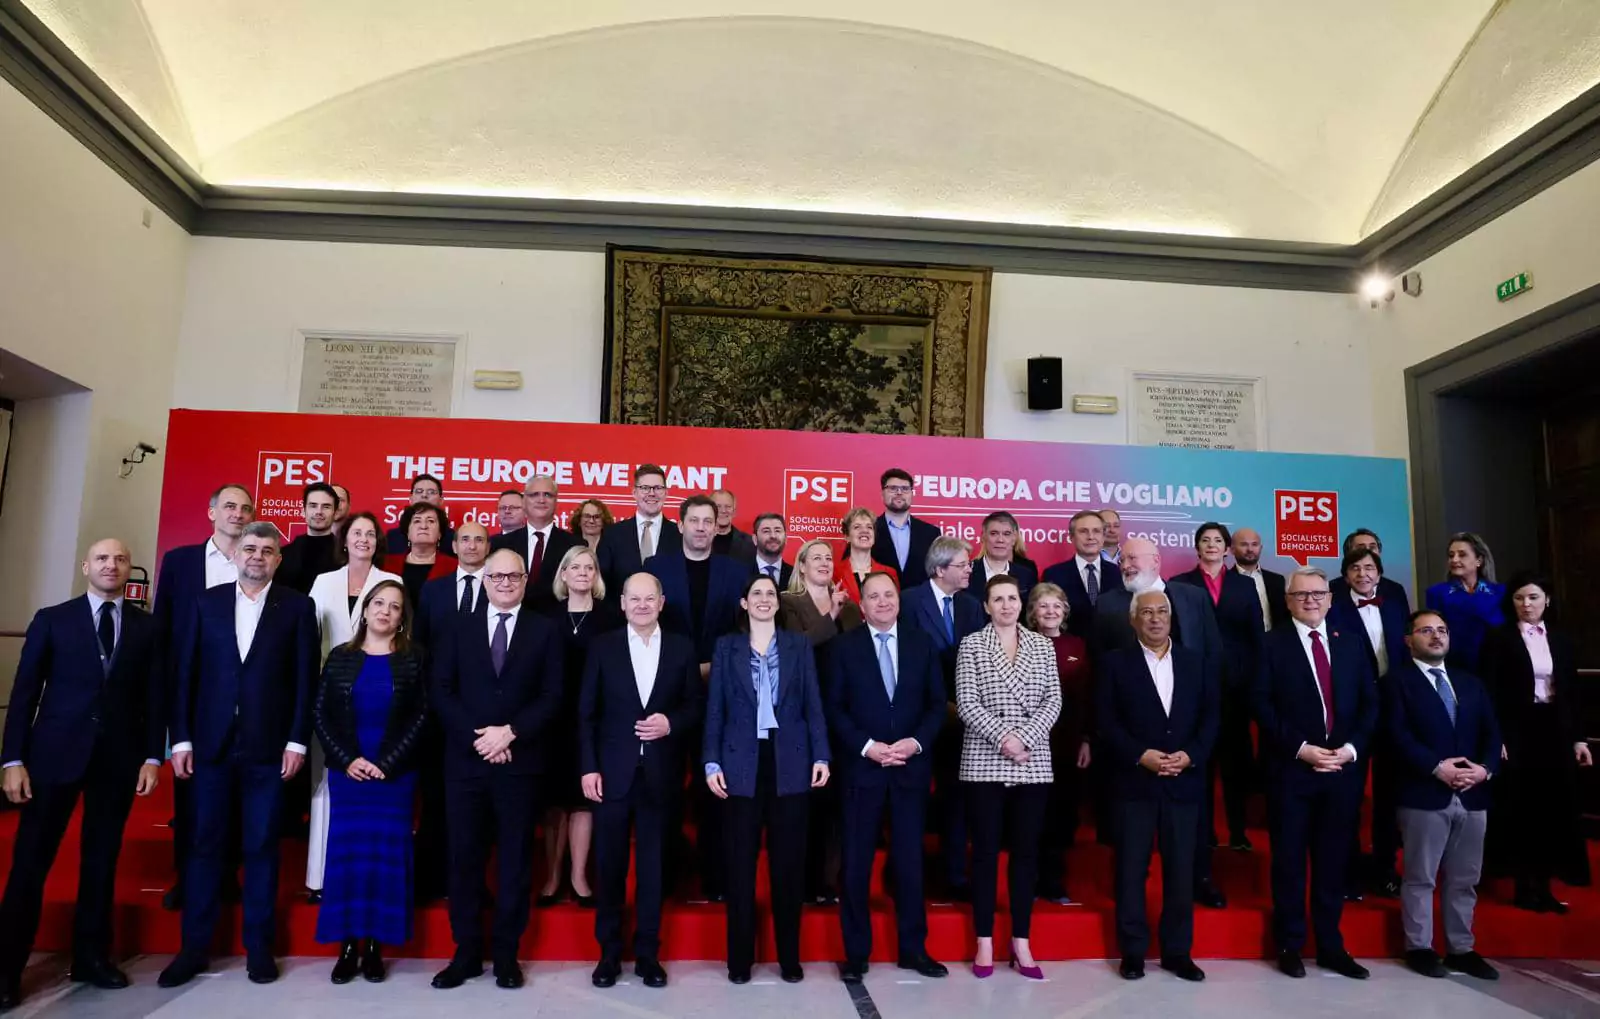 Reuniune Social Democrați Roma